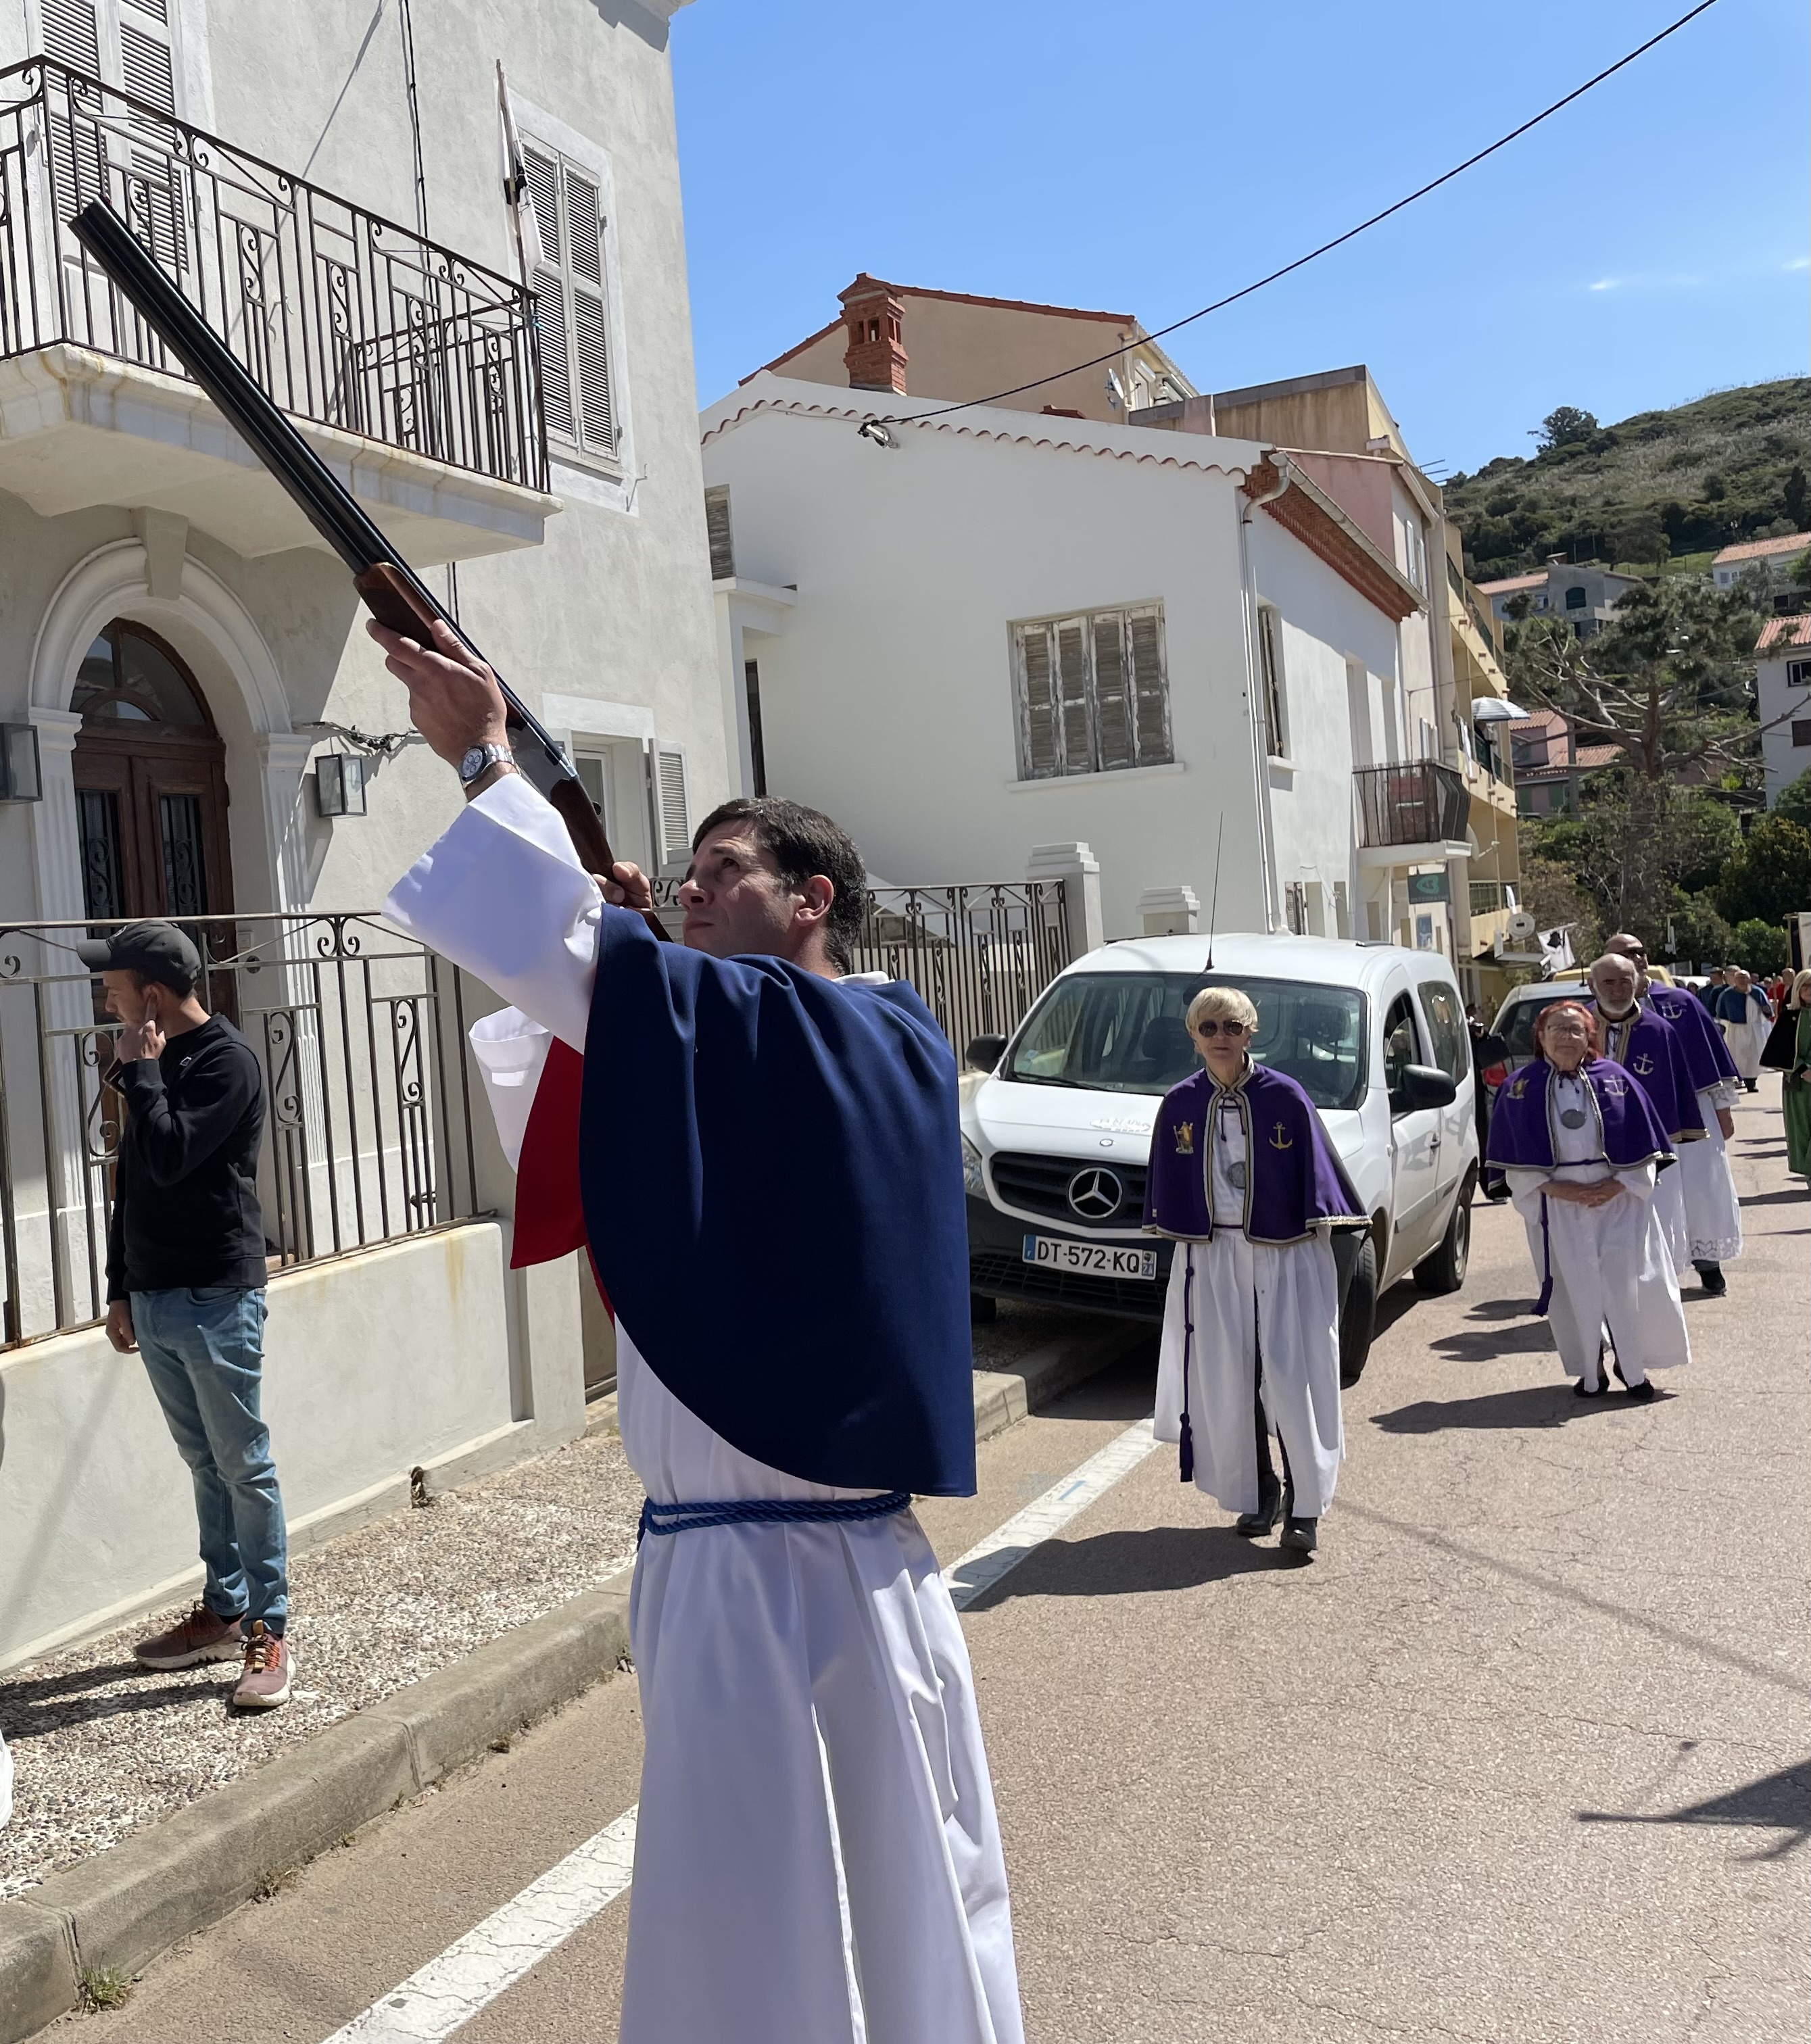 Semaine Sainte : Cargèse célèbre Christos Anesti dans la ferveur et la joie retrouvées